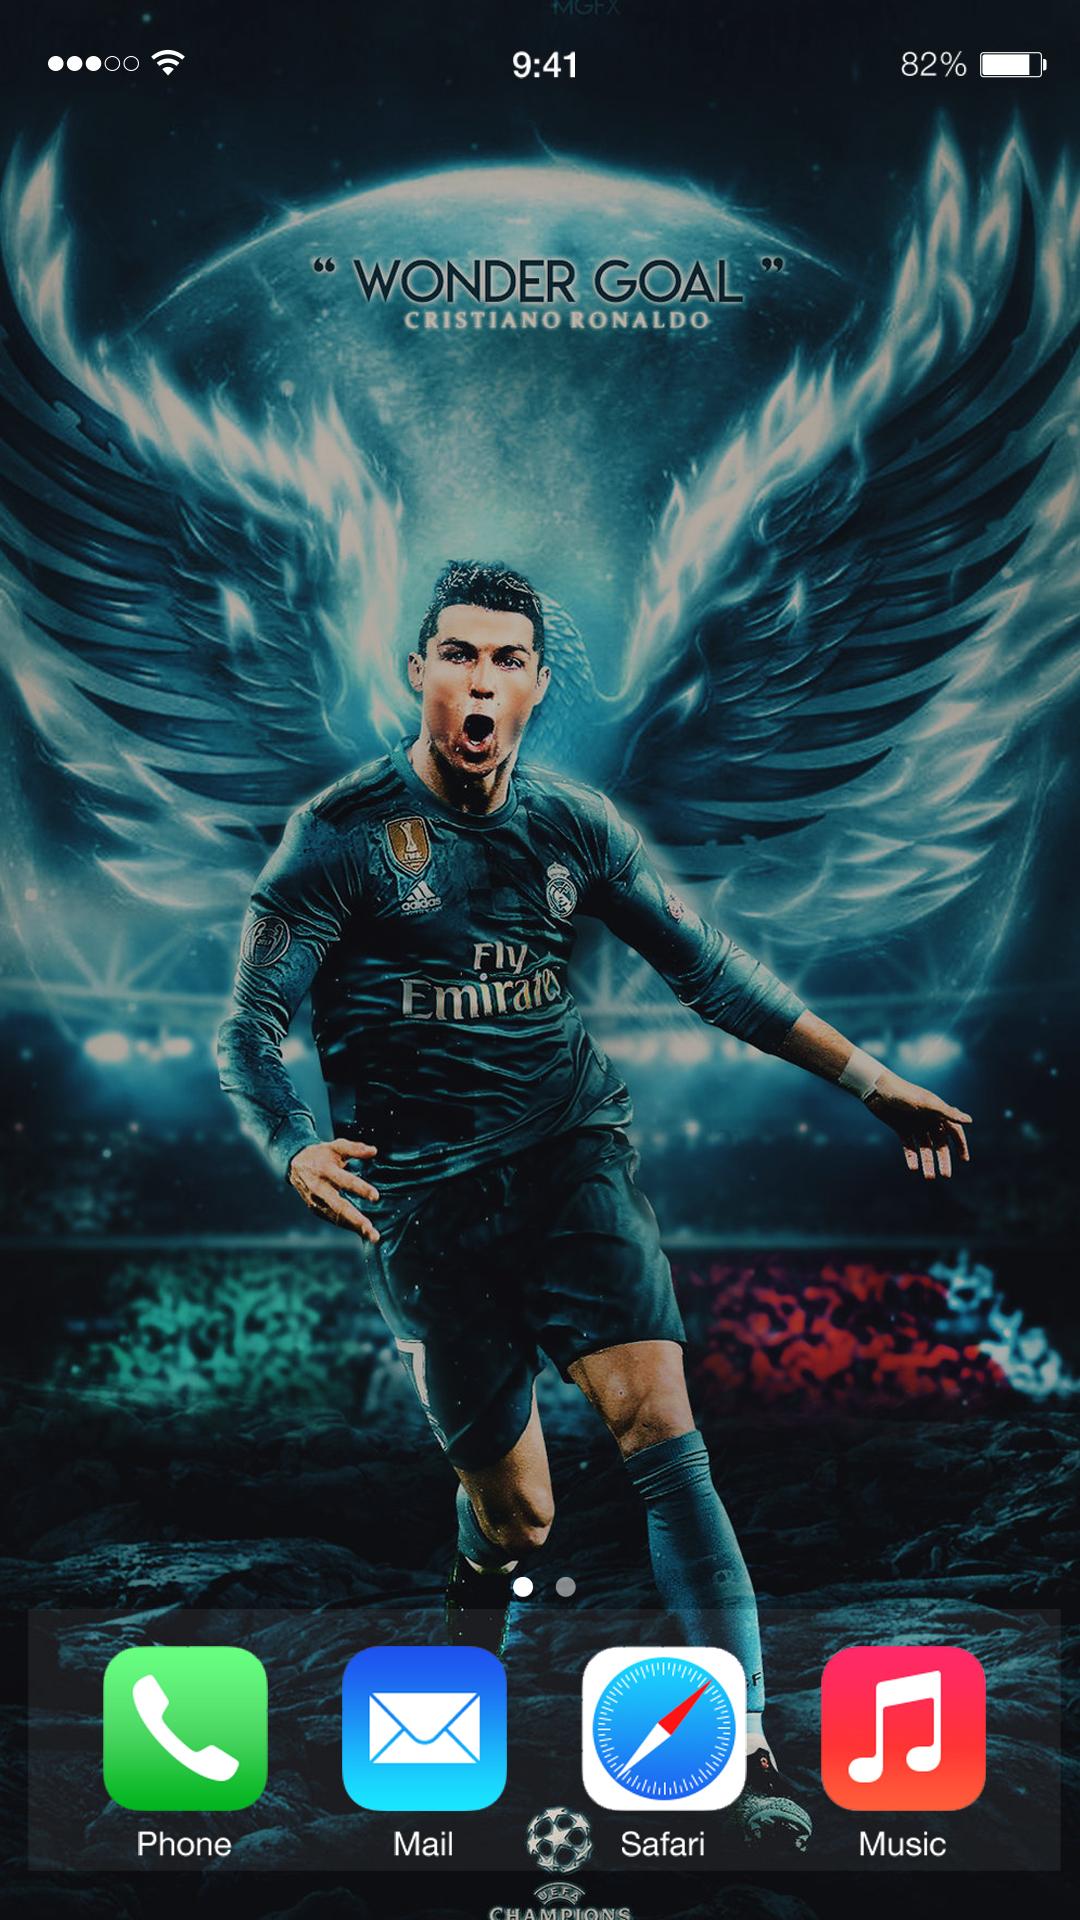 Cristiano Ronaldo Wallpapers: Với hình nền Cristiano Ronaldo, bạn sẽ được chiêm ngưỡng tài năng và sự nghiệp đầy mãnh liệt của cầu thủ vĩ đại nhất thế giới này. Những bức ảnh độc đáo và đầy màu sắc này sẽ khiến cho bạn cảm thấy hào hứng và tưng bừng.